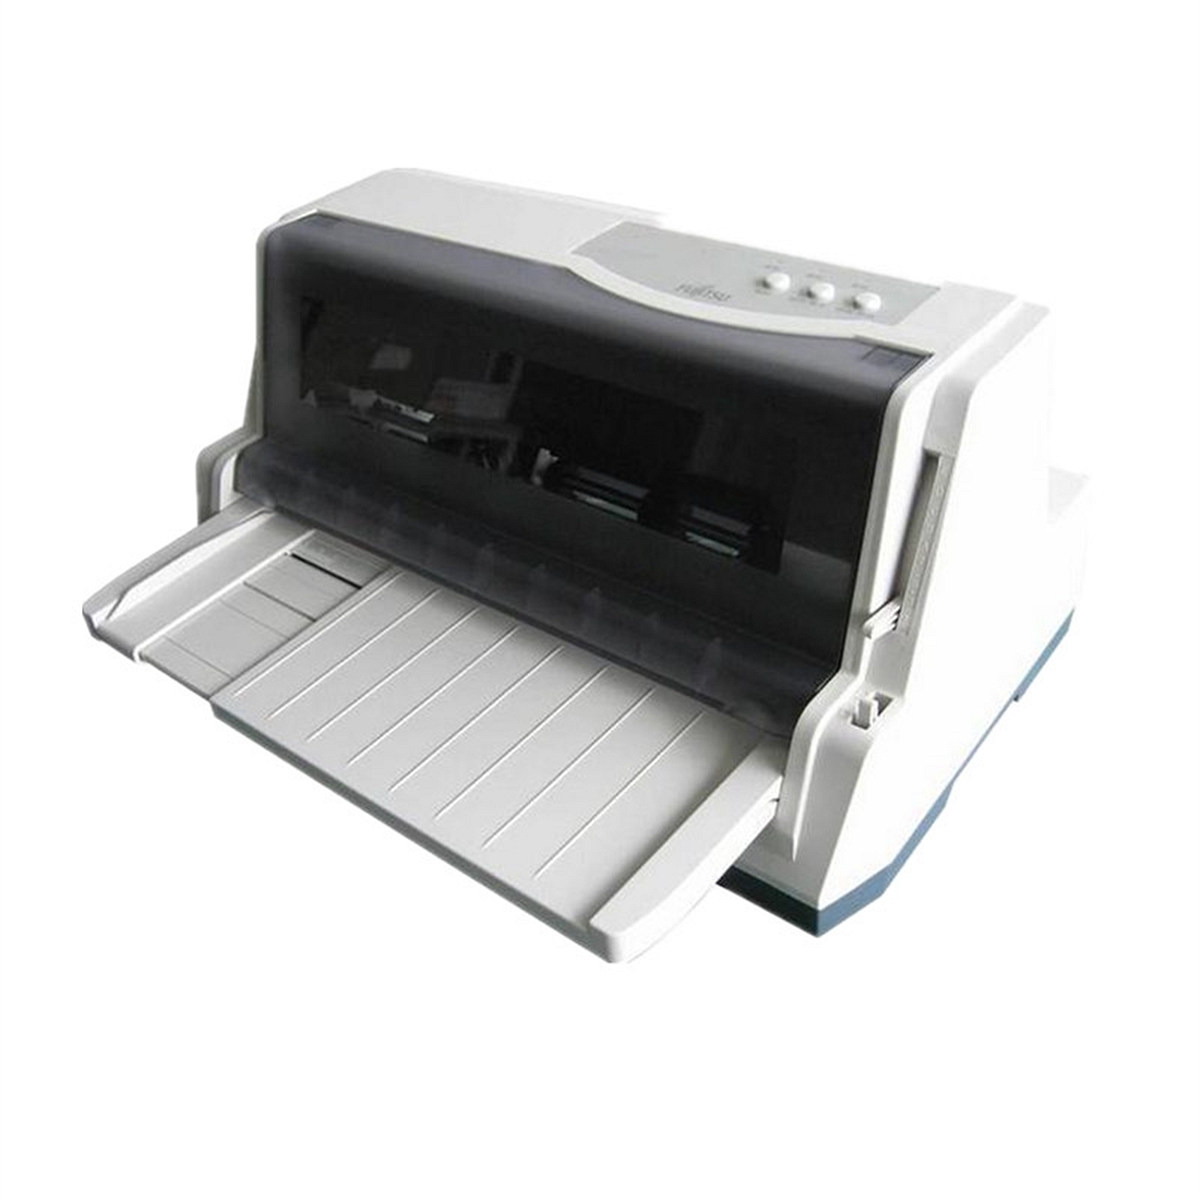 富士通DPK770/80列平推针式打印机(台)